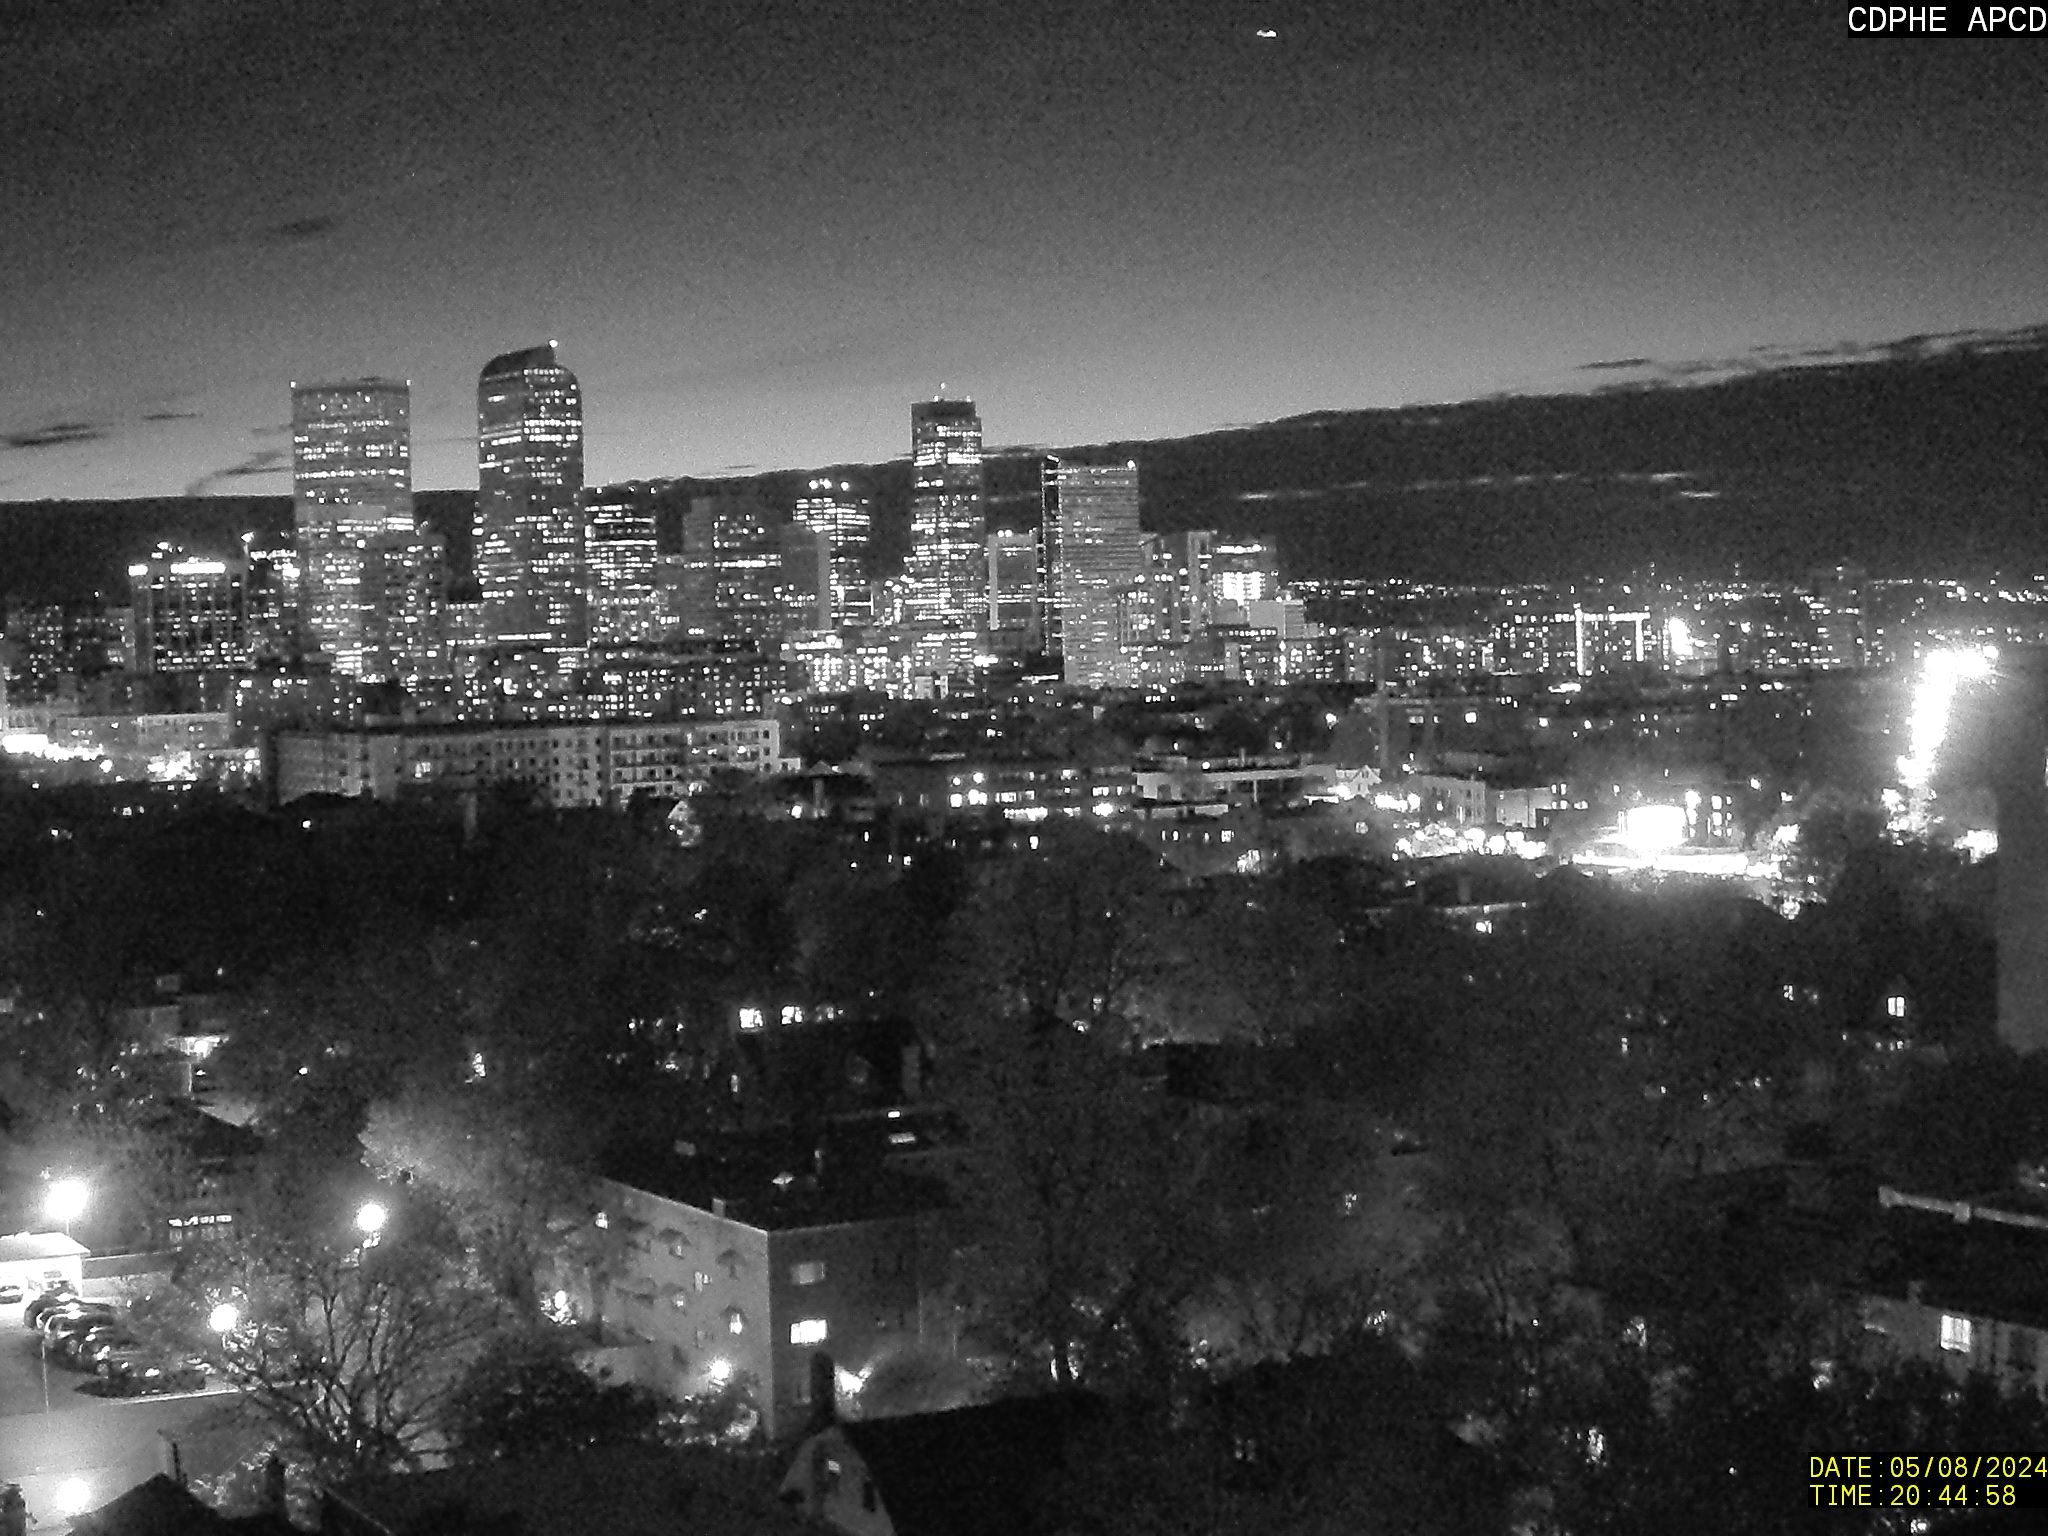 Colorado, US - Webcam Image